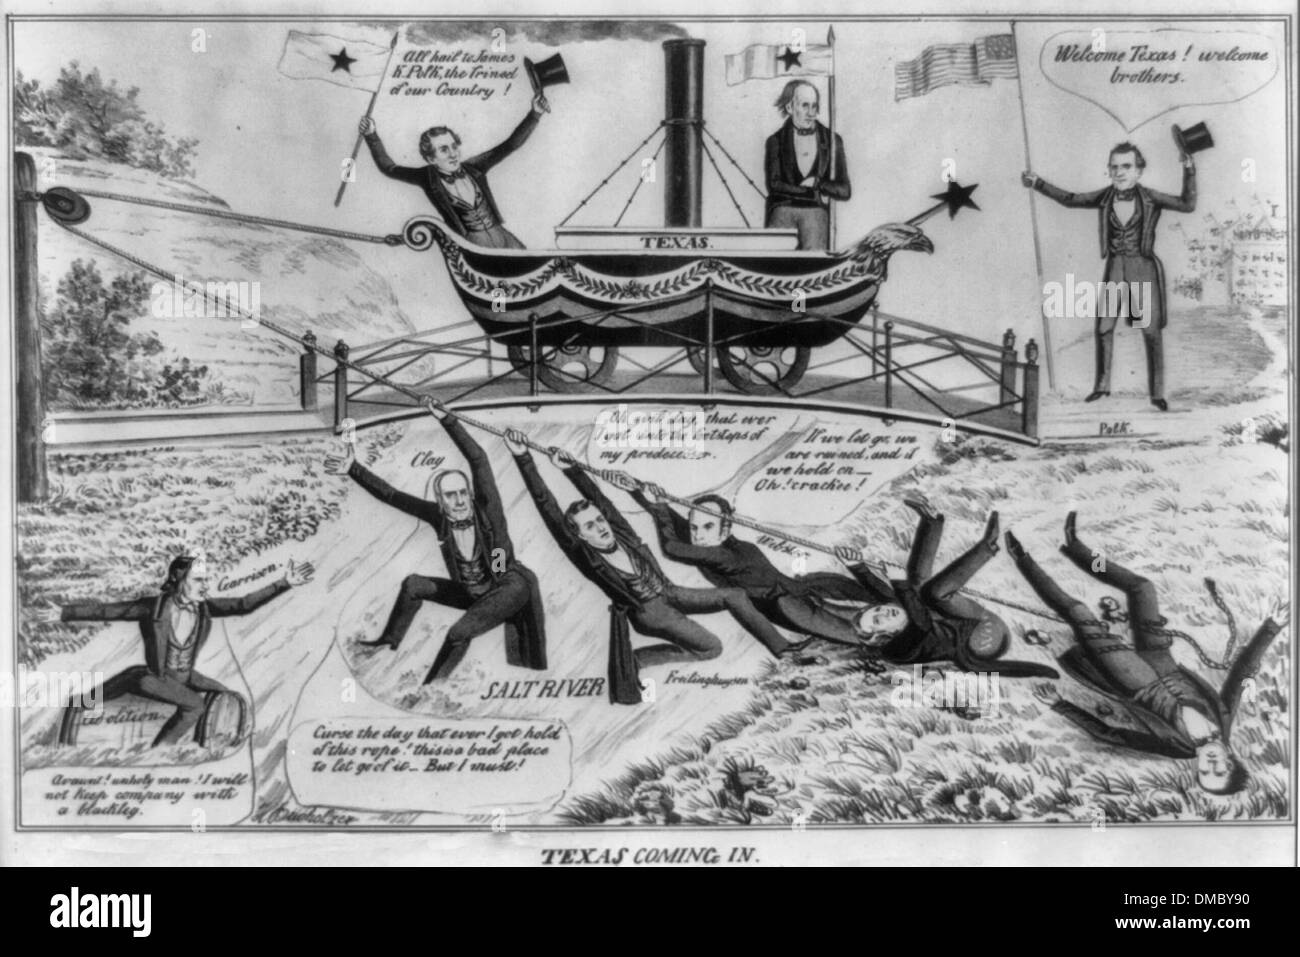 Texas Coming in - USA Political Cartoon, circa 1844 Stock Photo